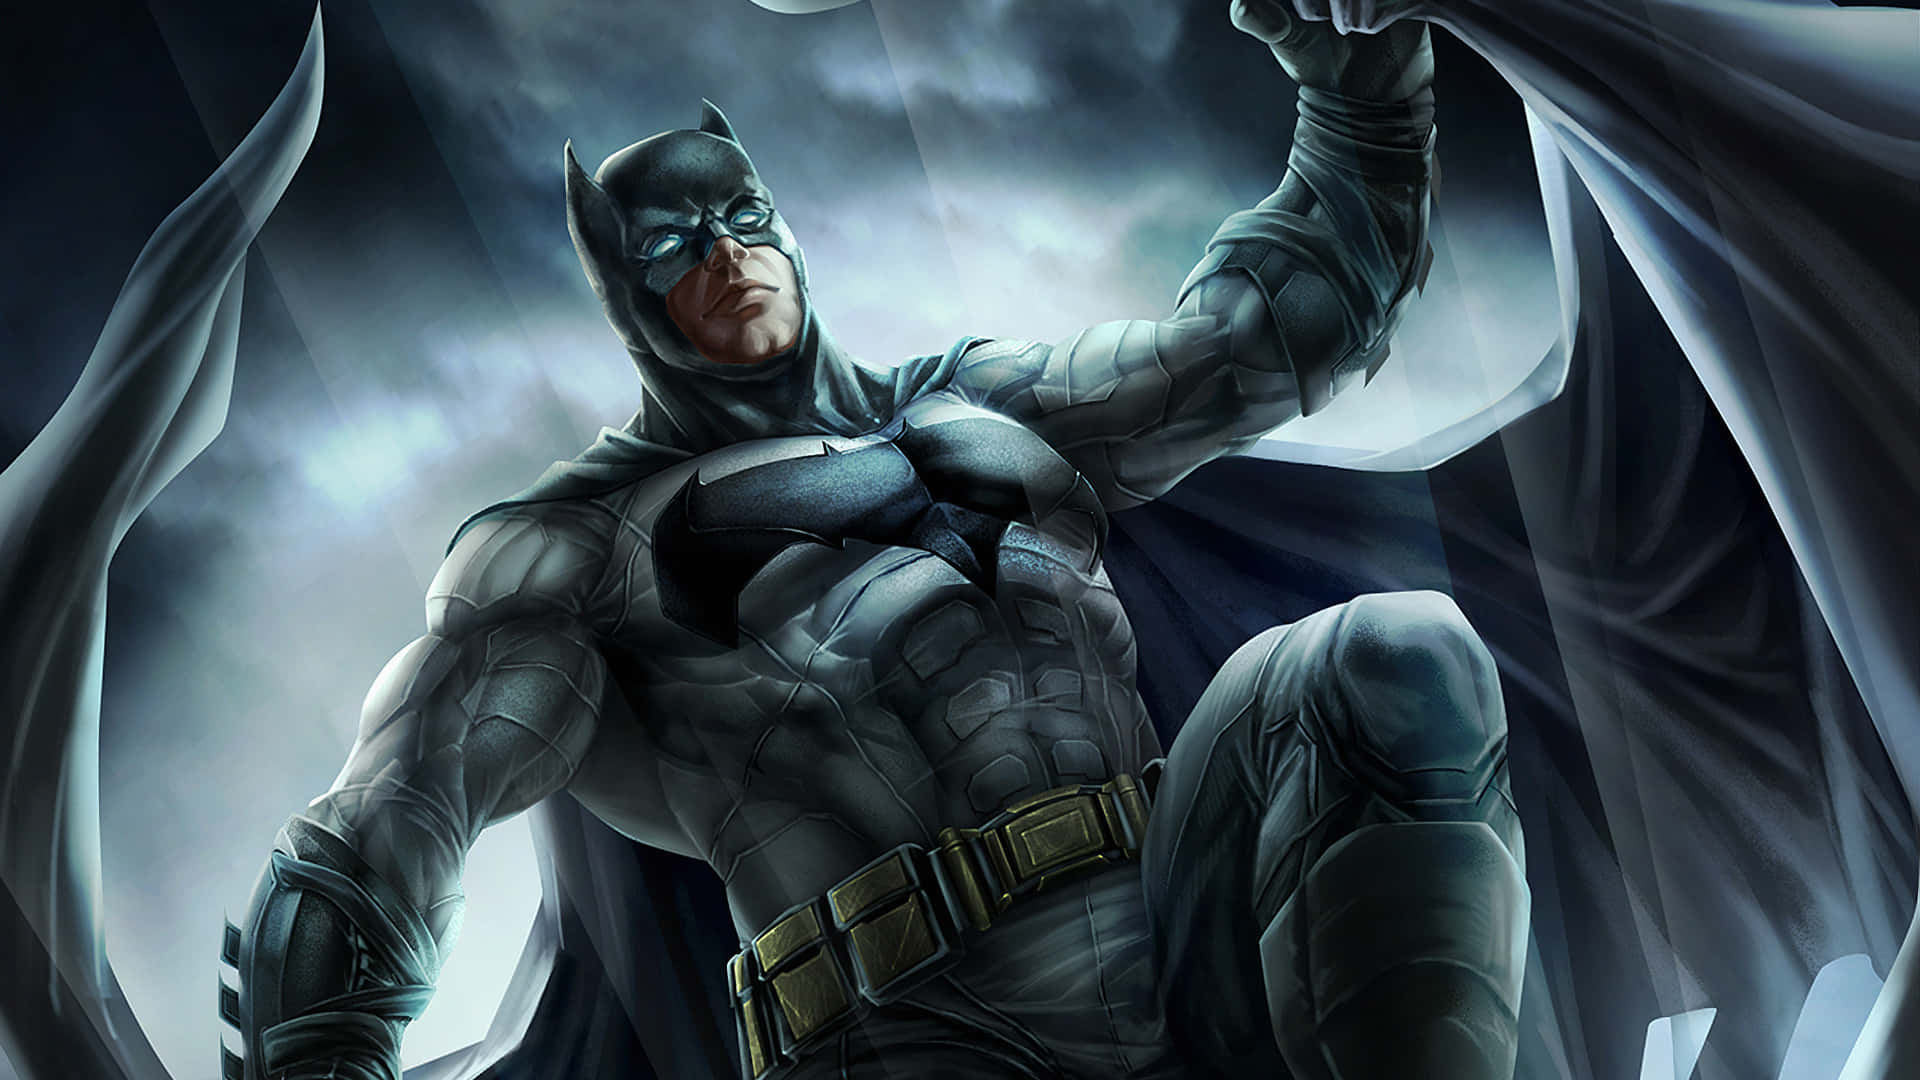 Úneteal Caballero Oscuro Con Este Fondo De Pantalla De Batman Para Tu Escritorio Fondo de pantalla